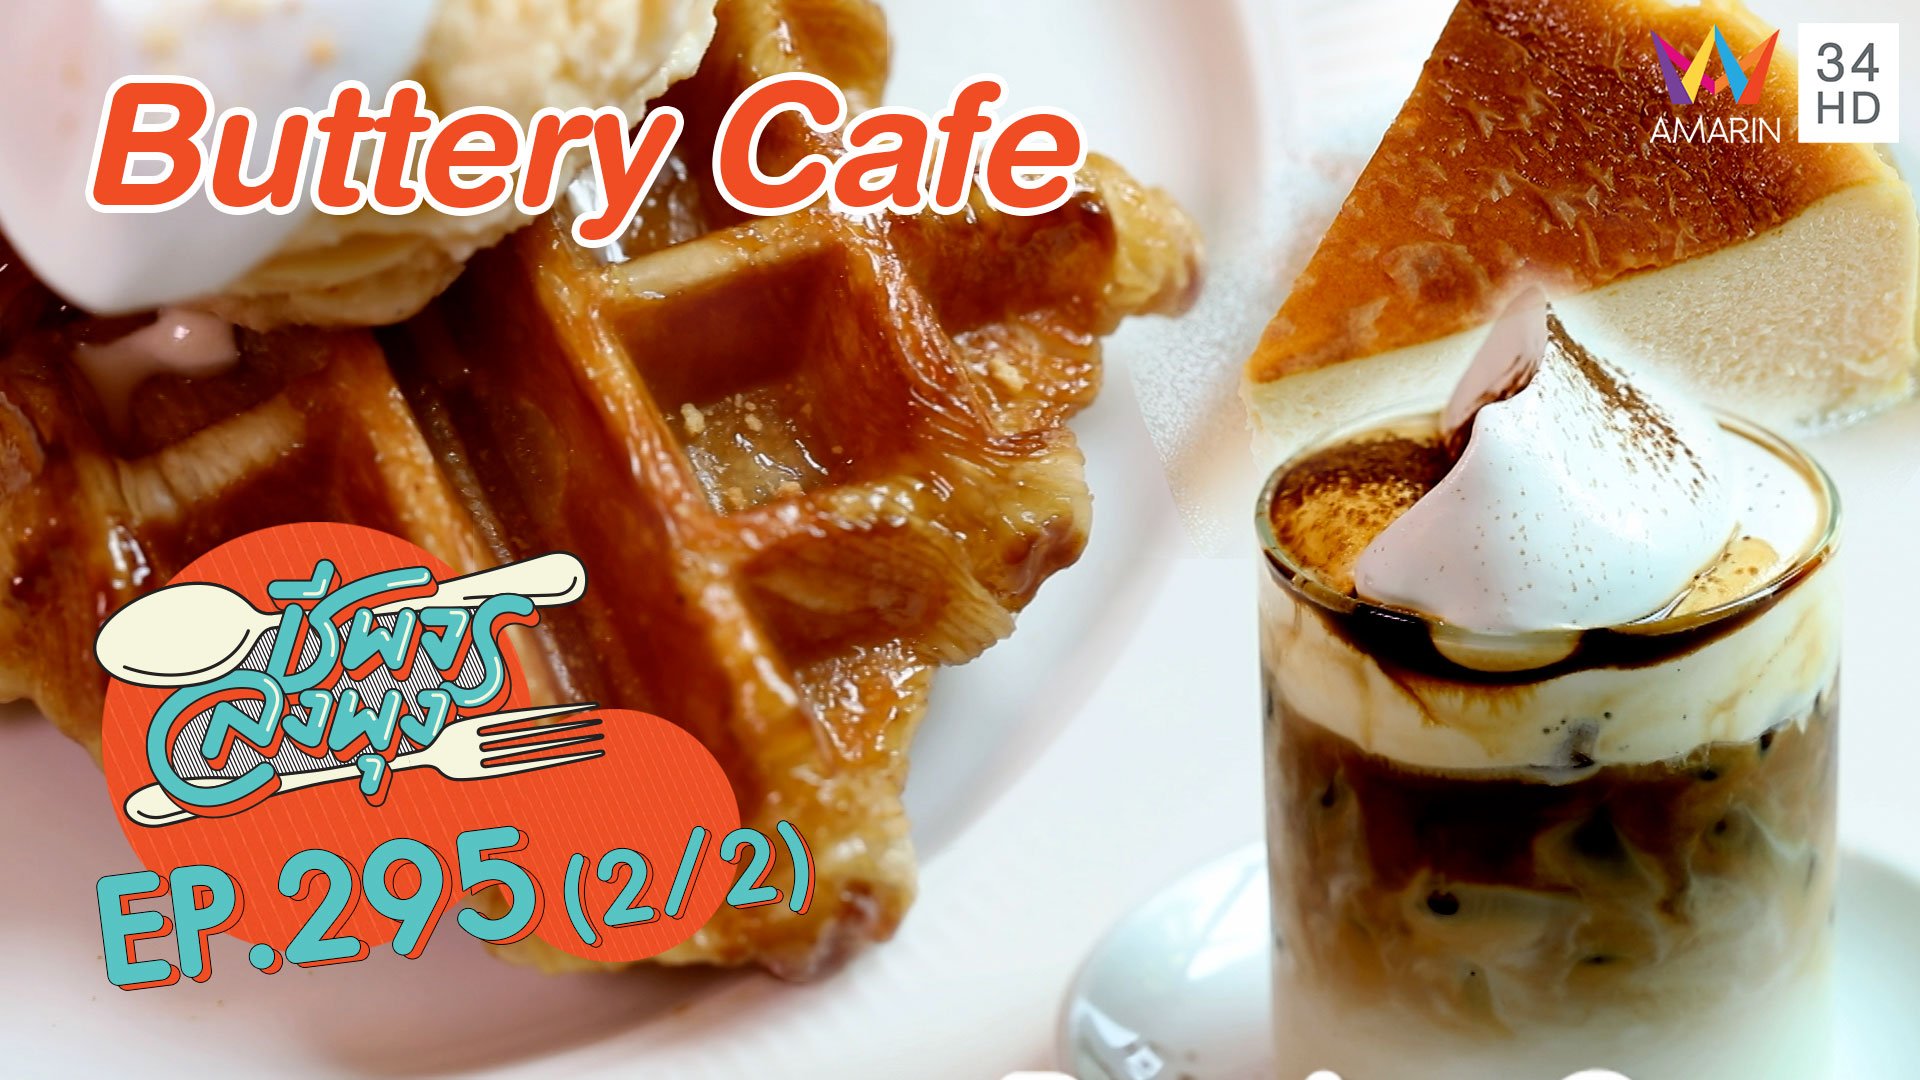 คาวก็ดีหวานก็เลิศ @Buttery Cafe | ชีพจรลงพุง | 18 เม.ย. 64 (2/2) | AMARIN TVHD34